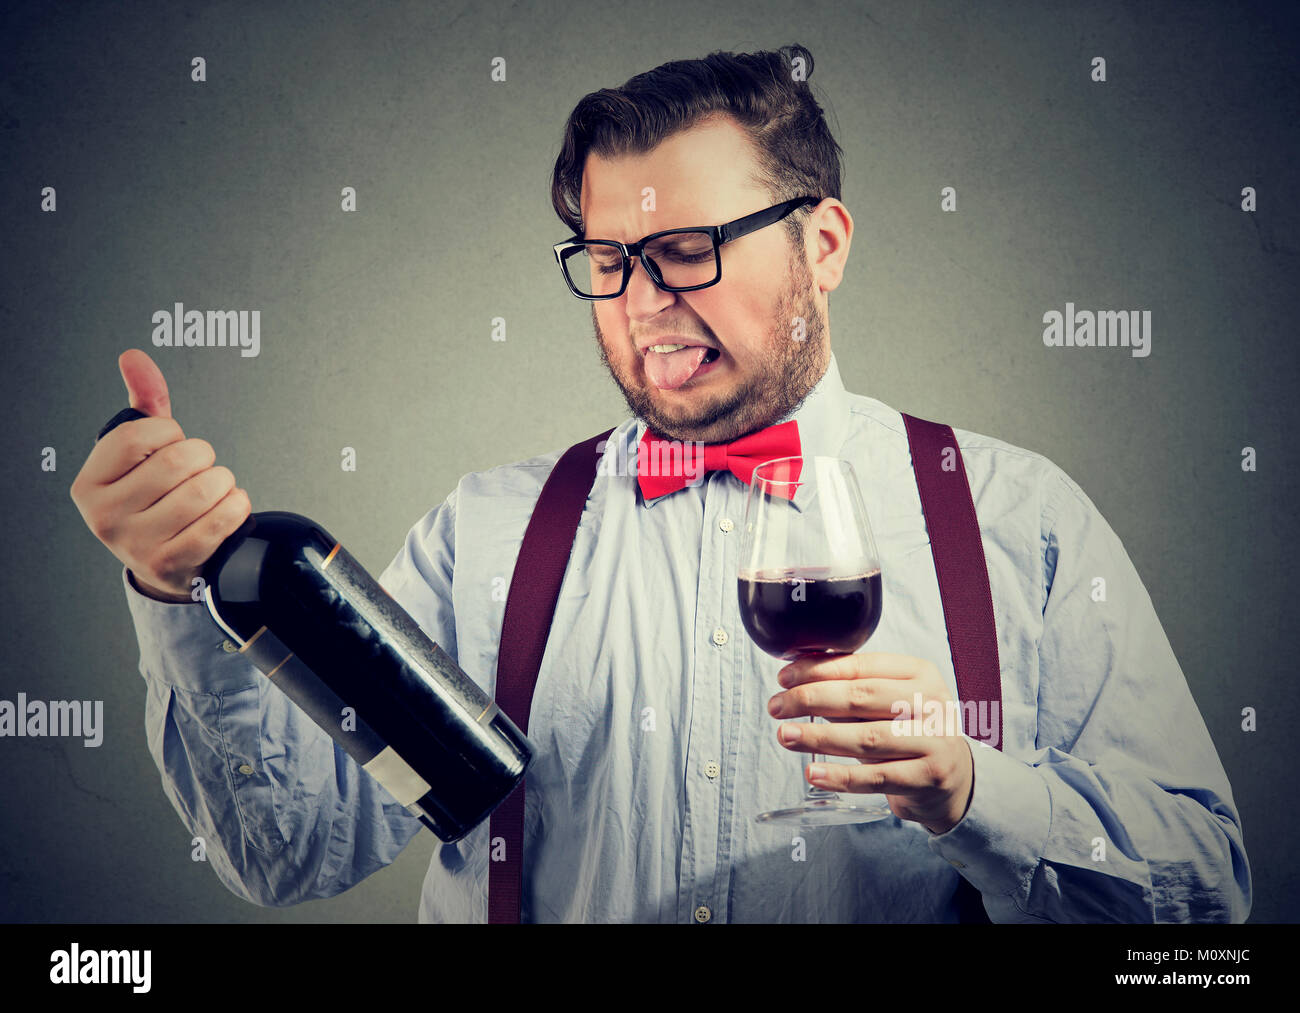 Uomo in bowtie cercando vino e cercando insoddisfatto mentre esplorate la bottiglia. Foto Stock